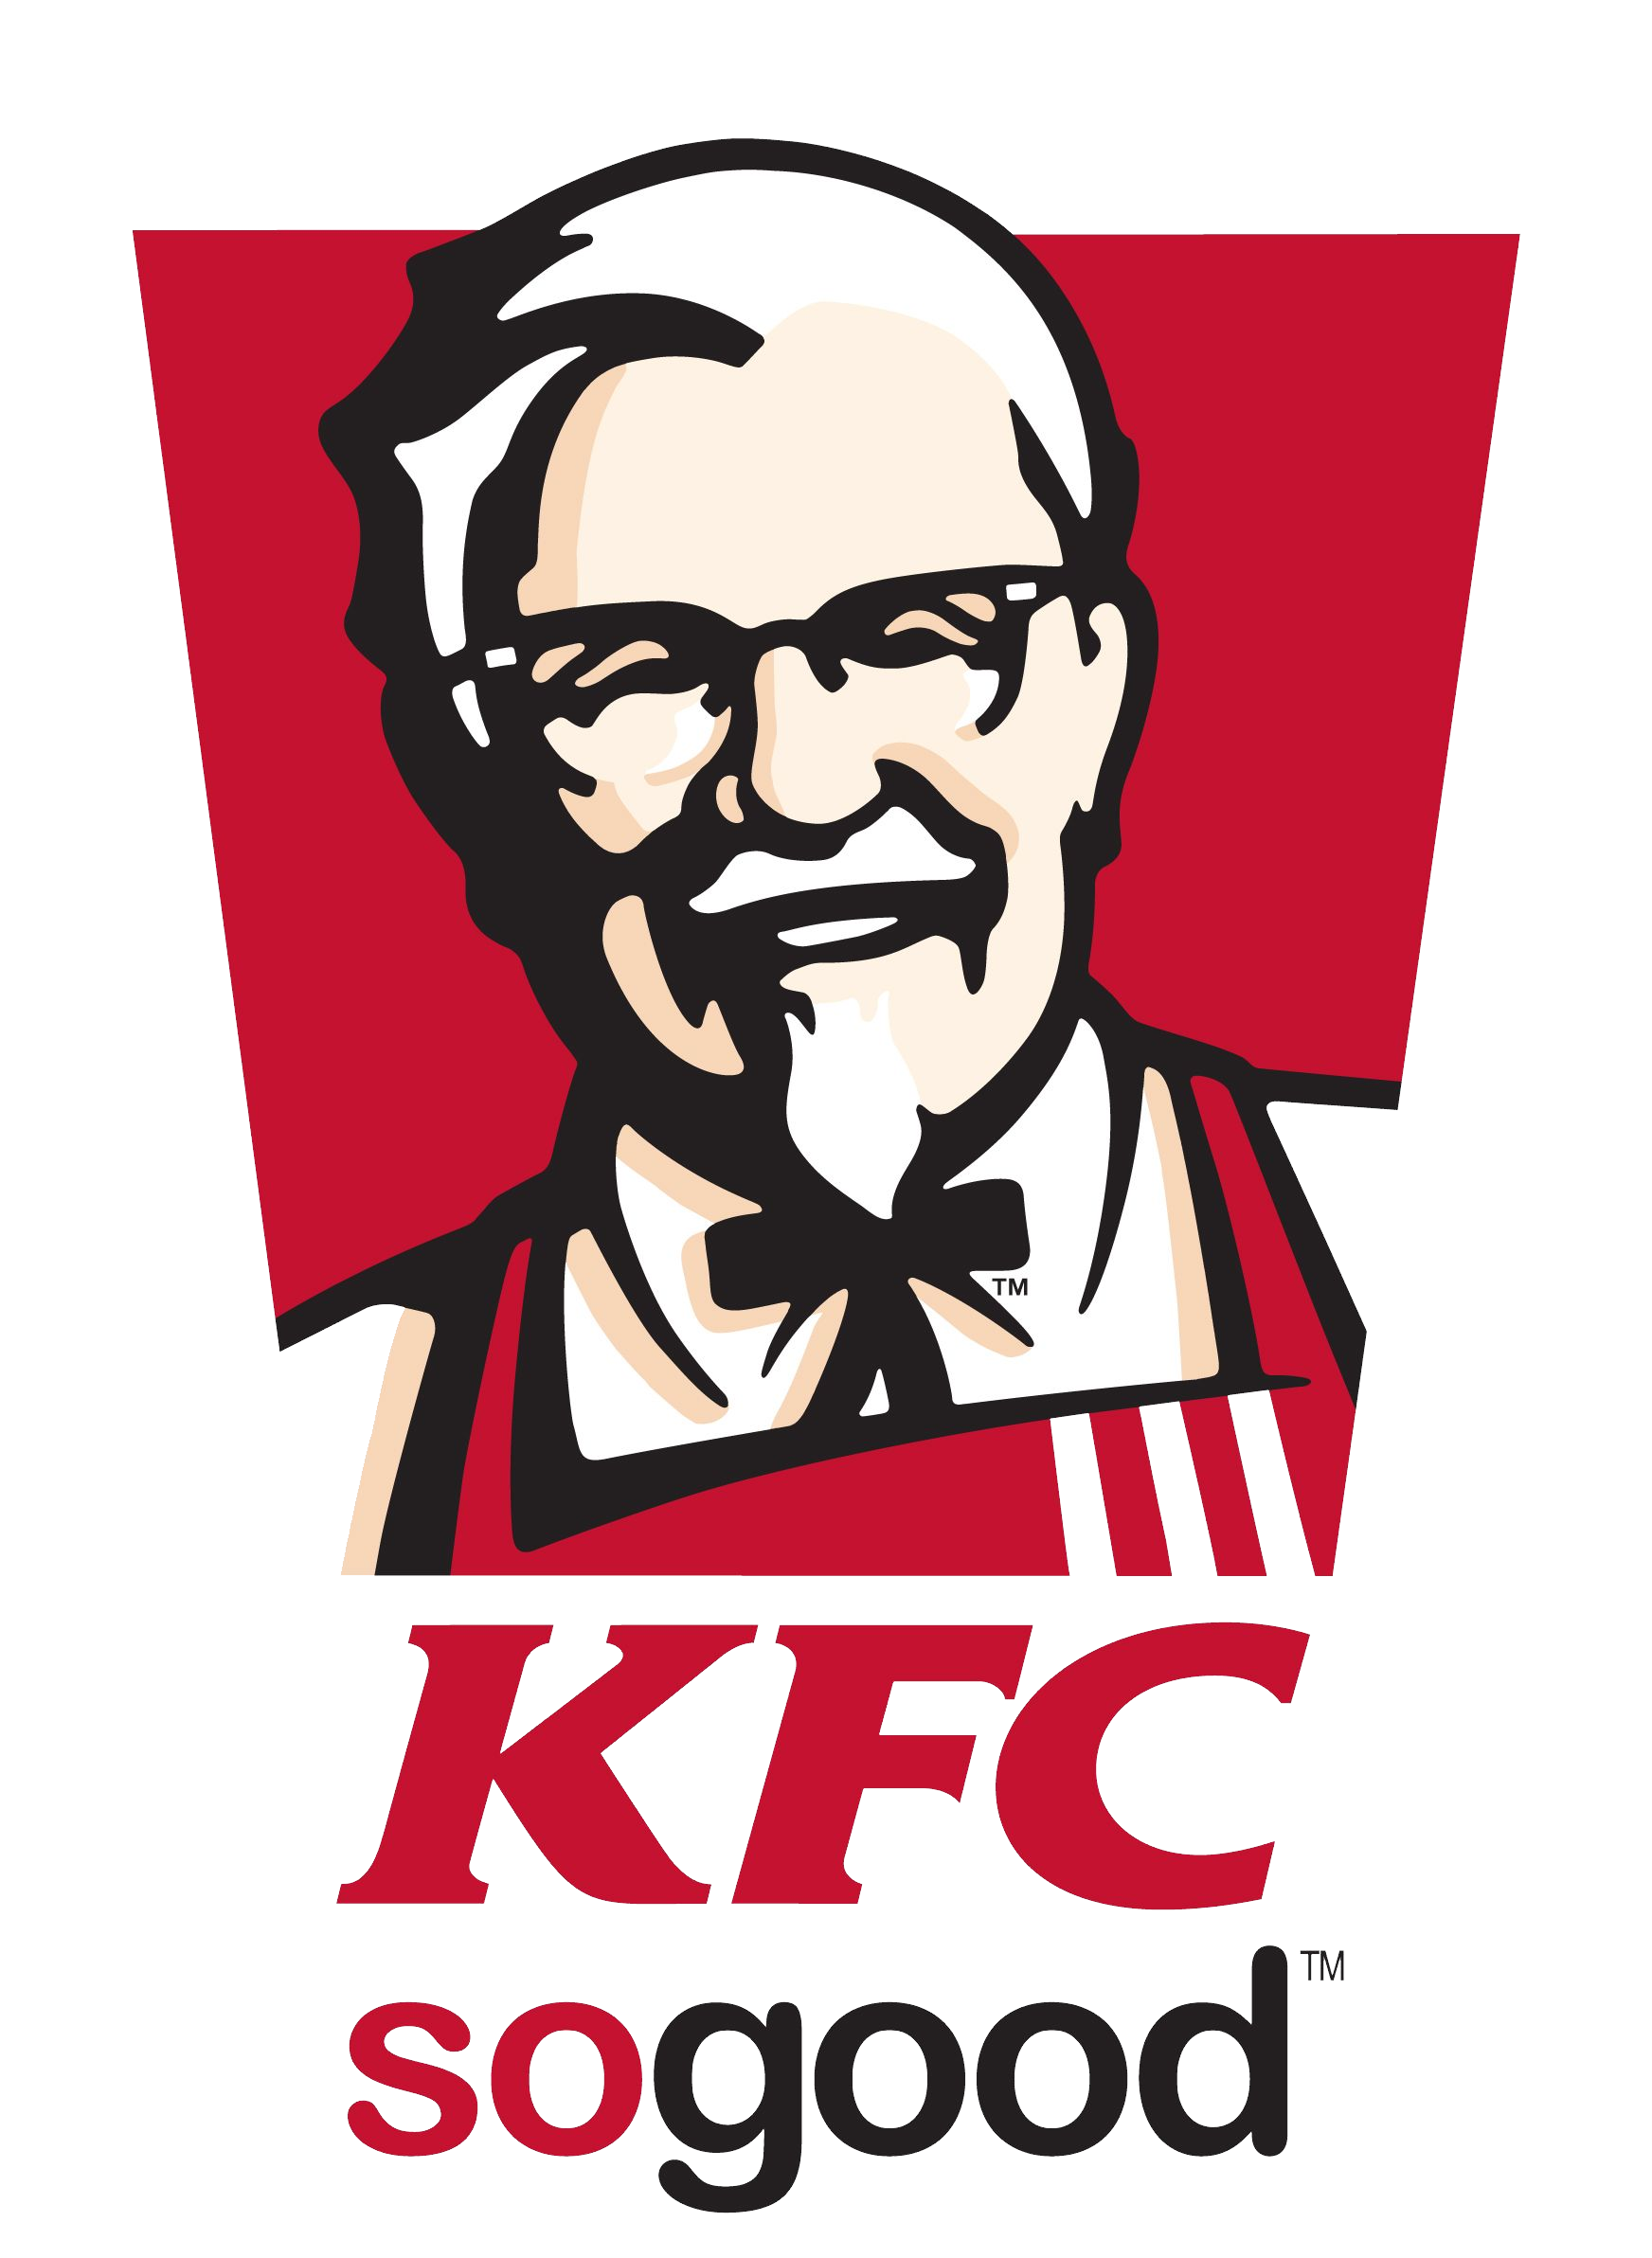 kfc restaurant logo